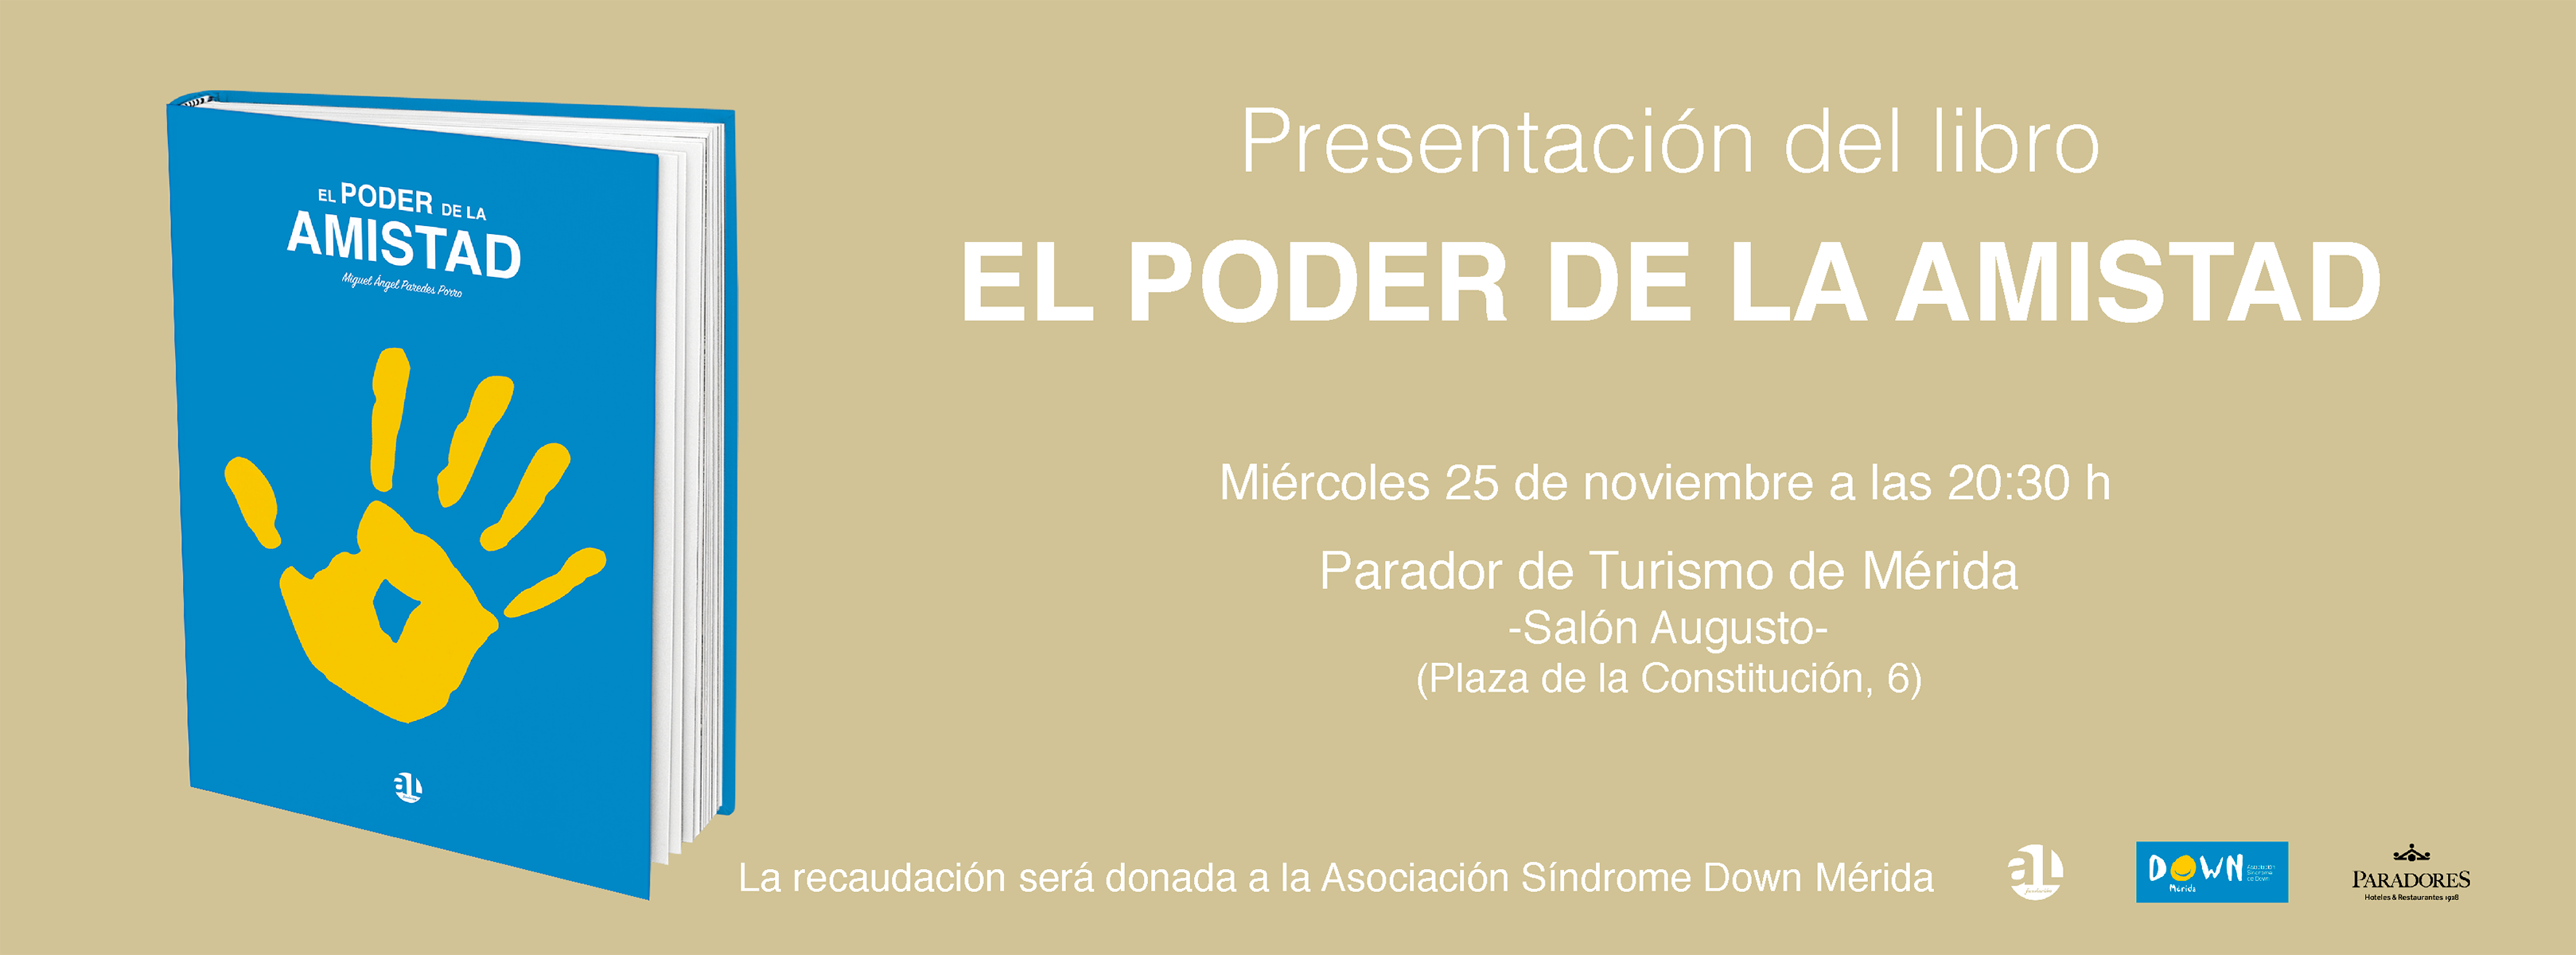 El poder de la amistad, Miguel Ángel Paredes Porro, AL Fundación, banner facebook de la presentación del libro en el Parador de Turismo de Mérida